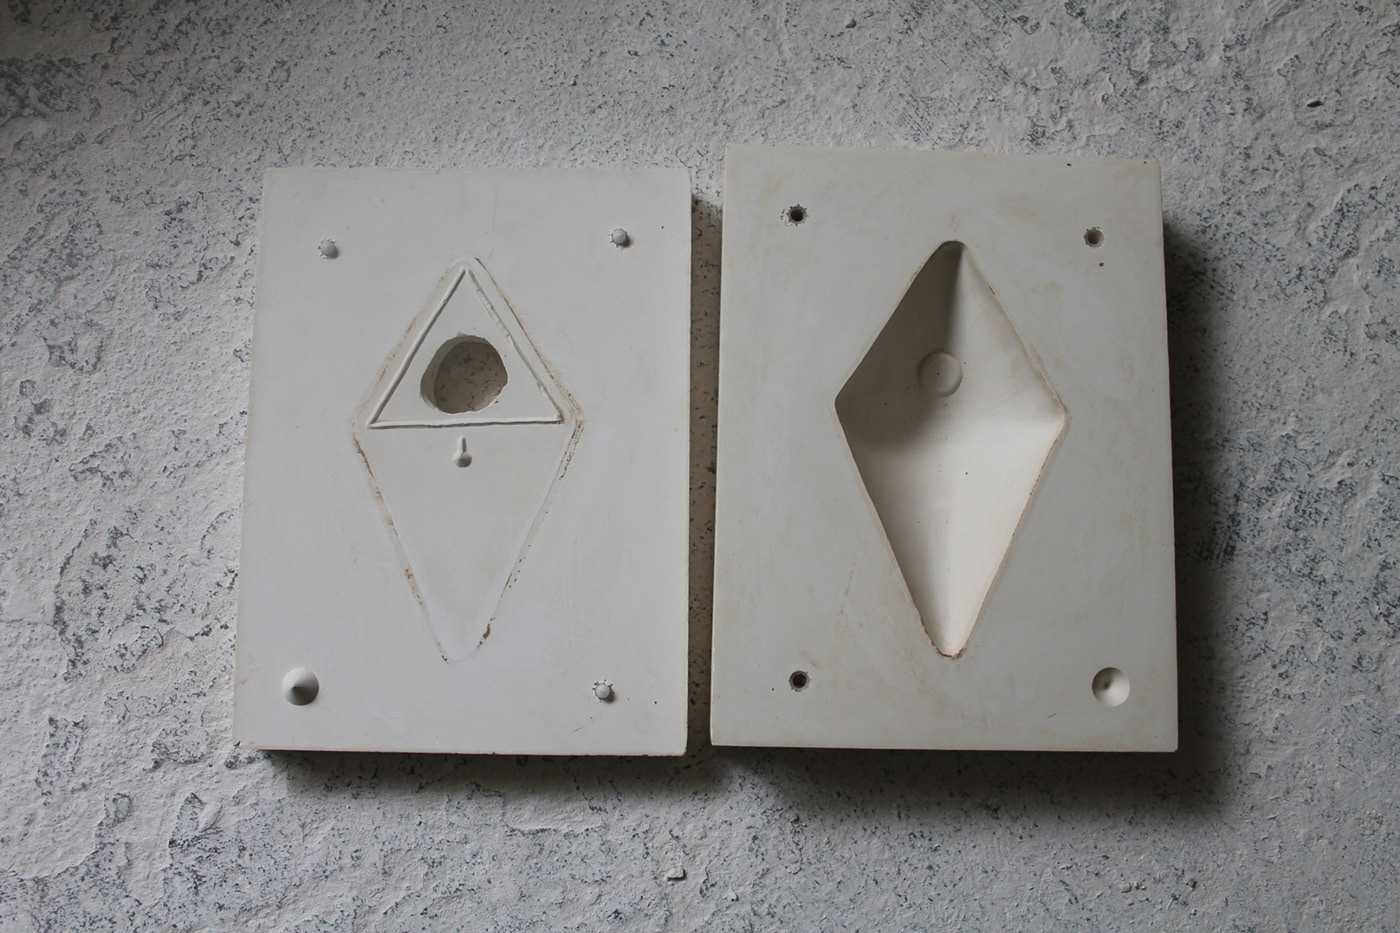 ceramic design glazed product Slipcasting stoneware Vase Minimalism